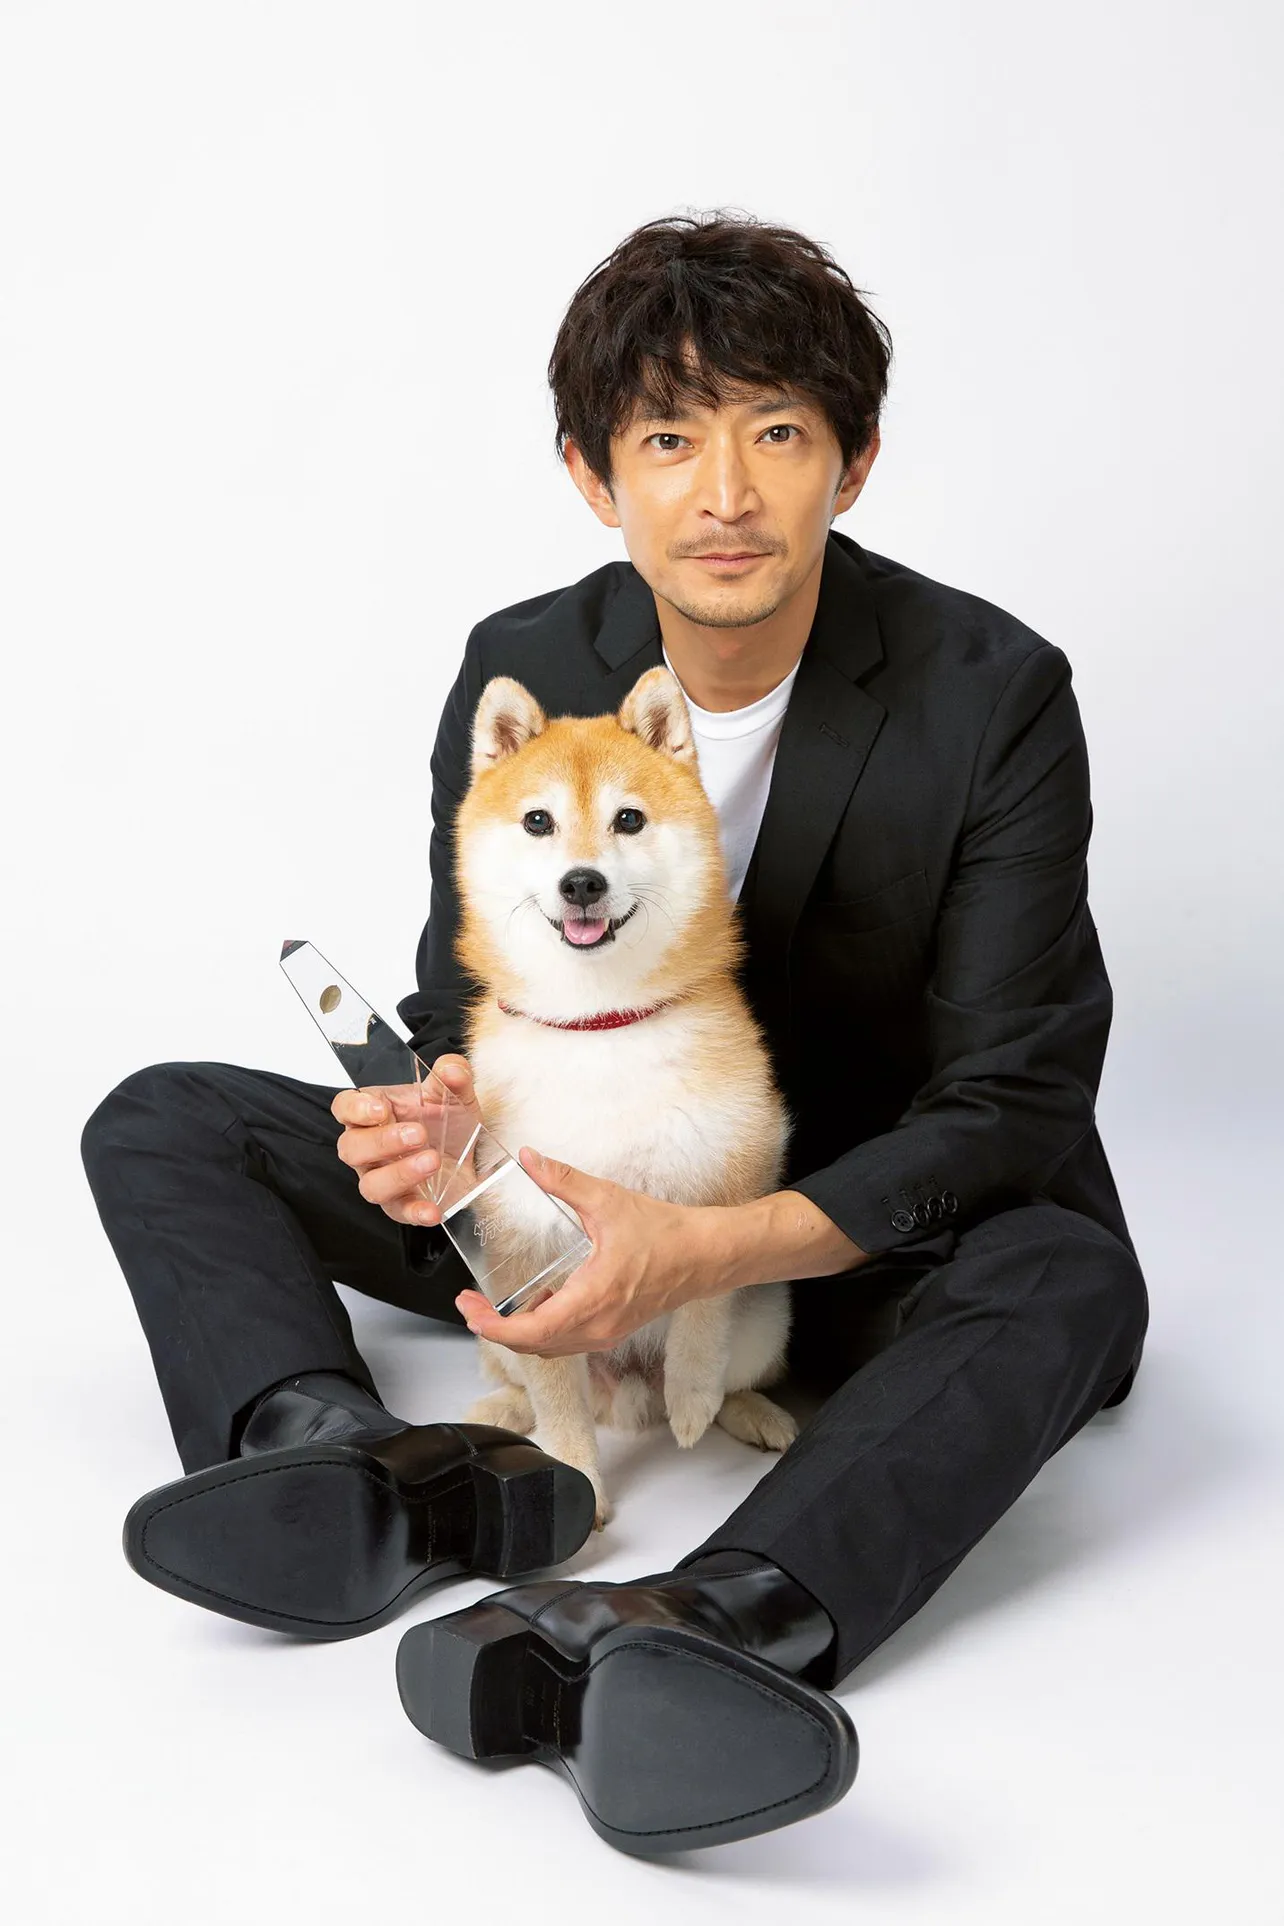 ザテレビジョン特別賞には「ナンバMG5」に登場した松(津田健次郎＆豆三郎)が選出された